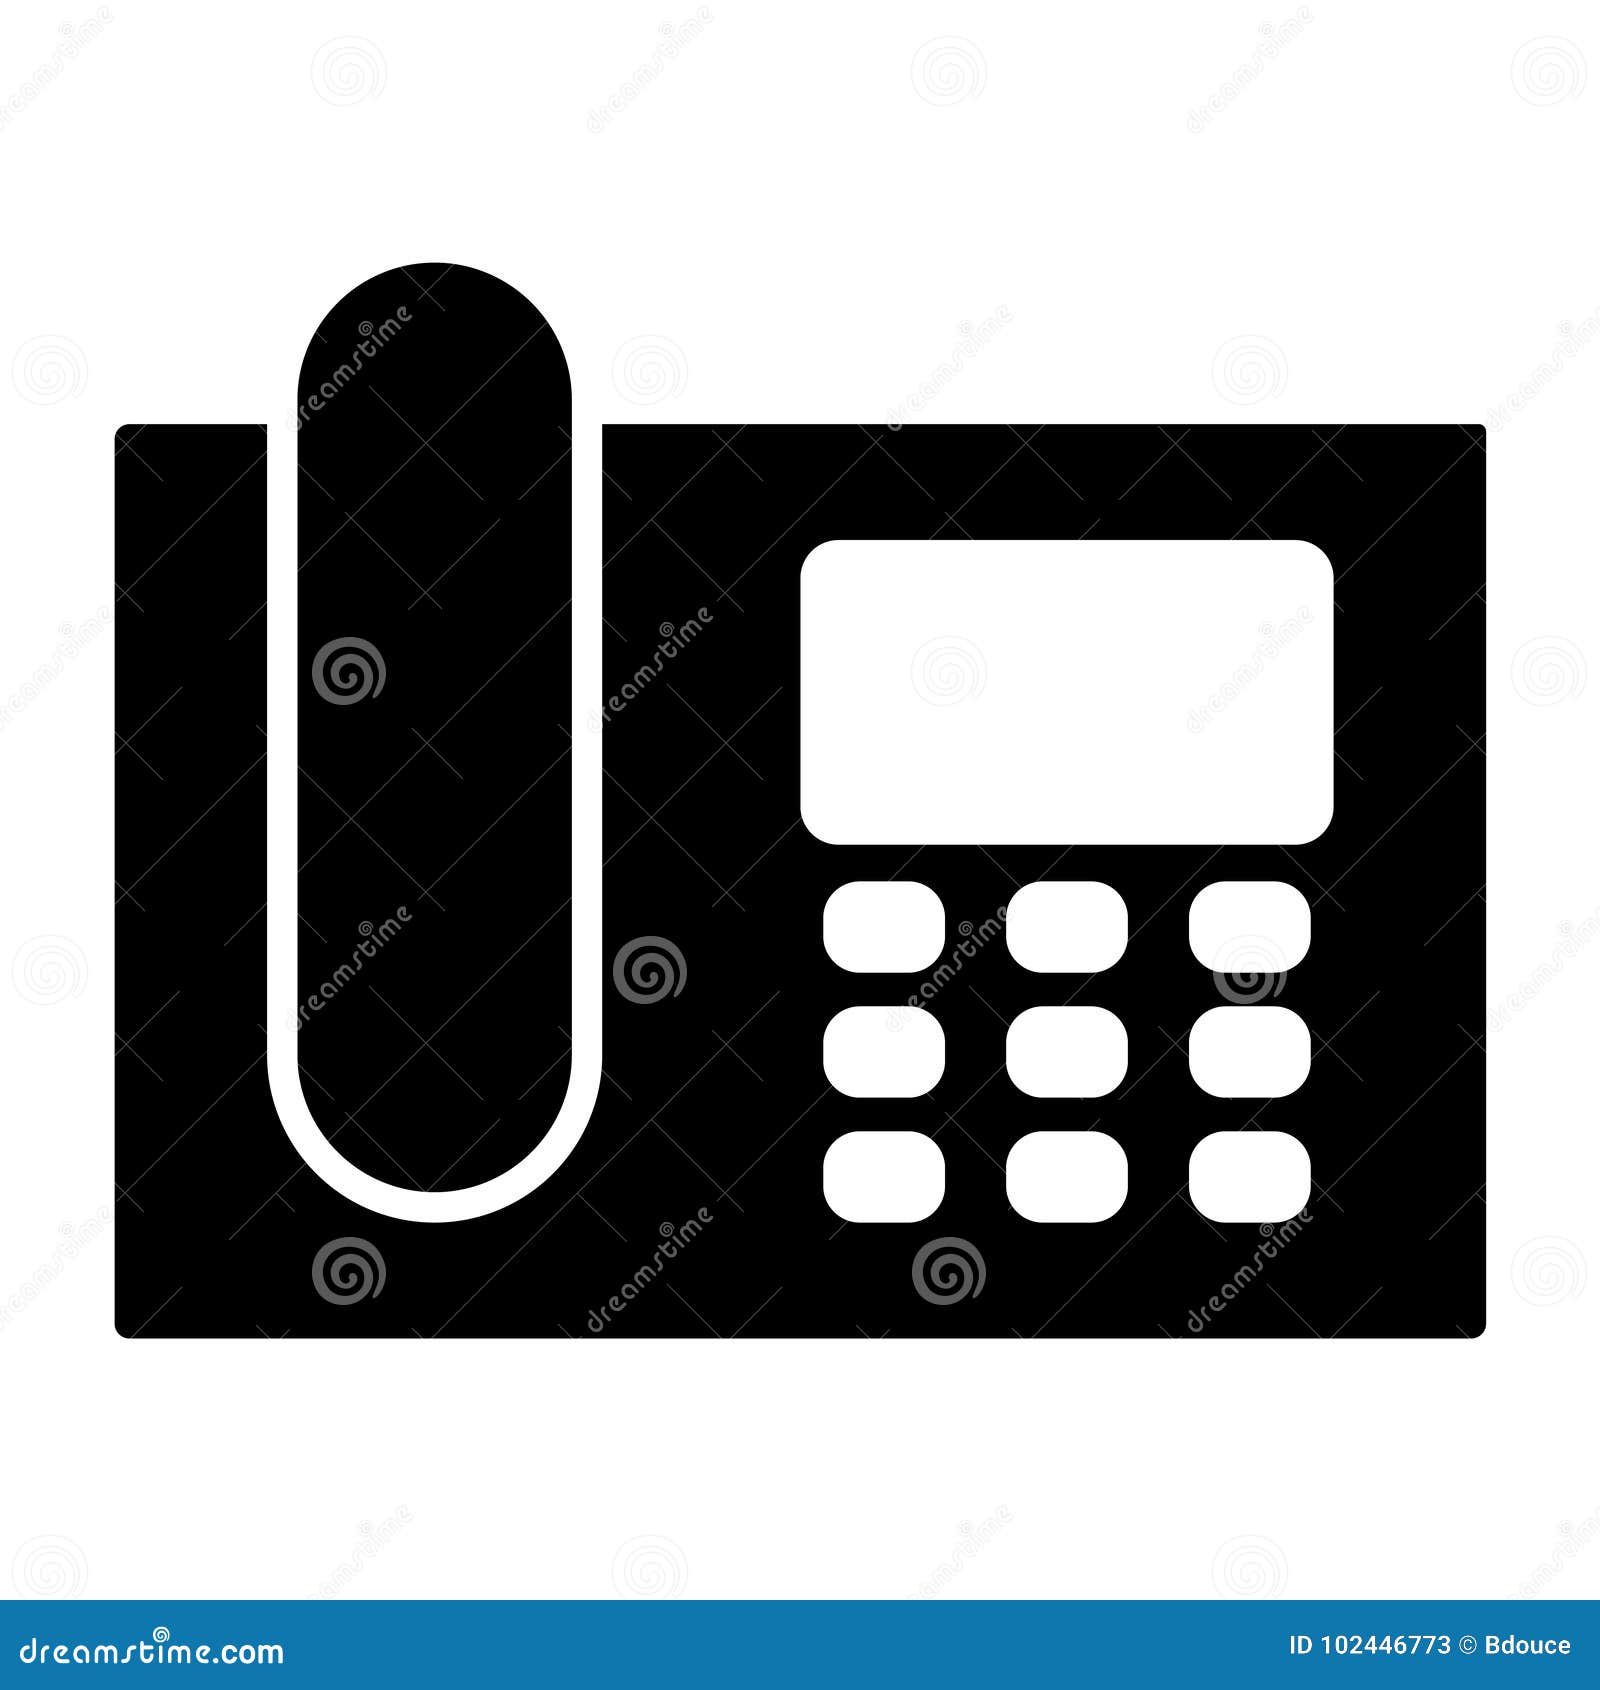 intercom telephone icon